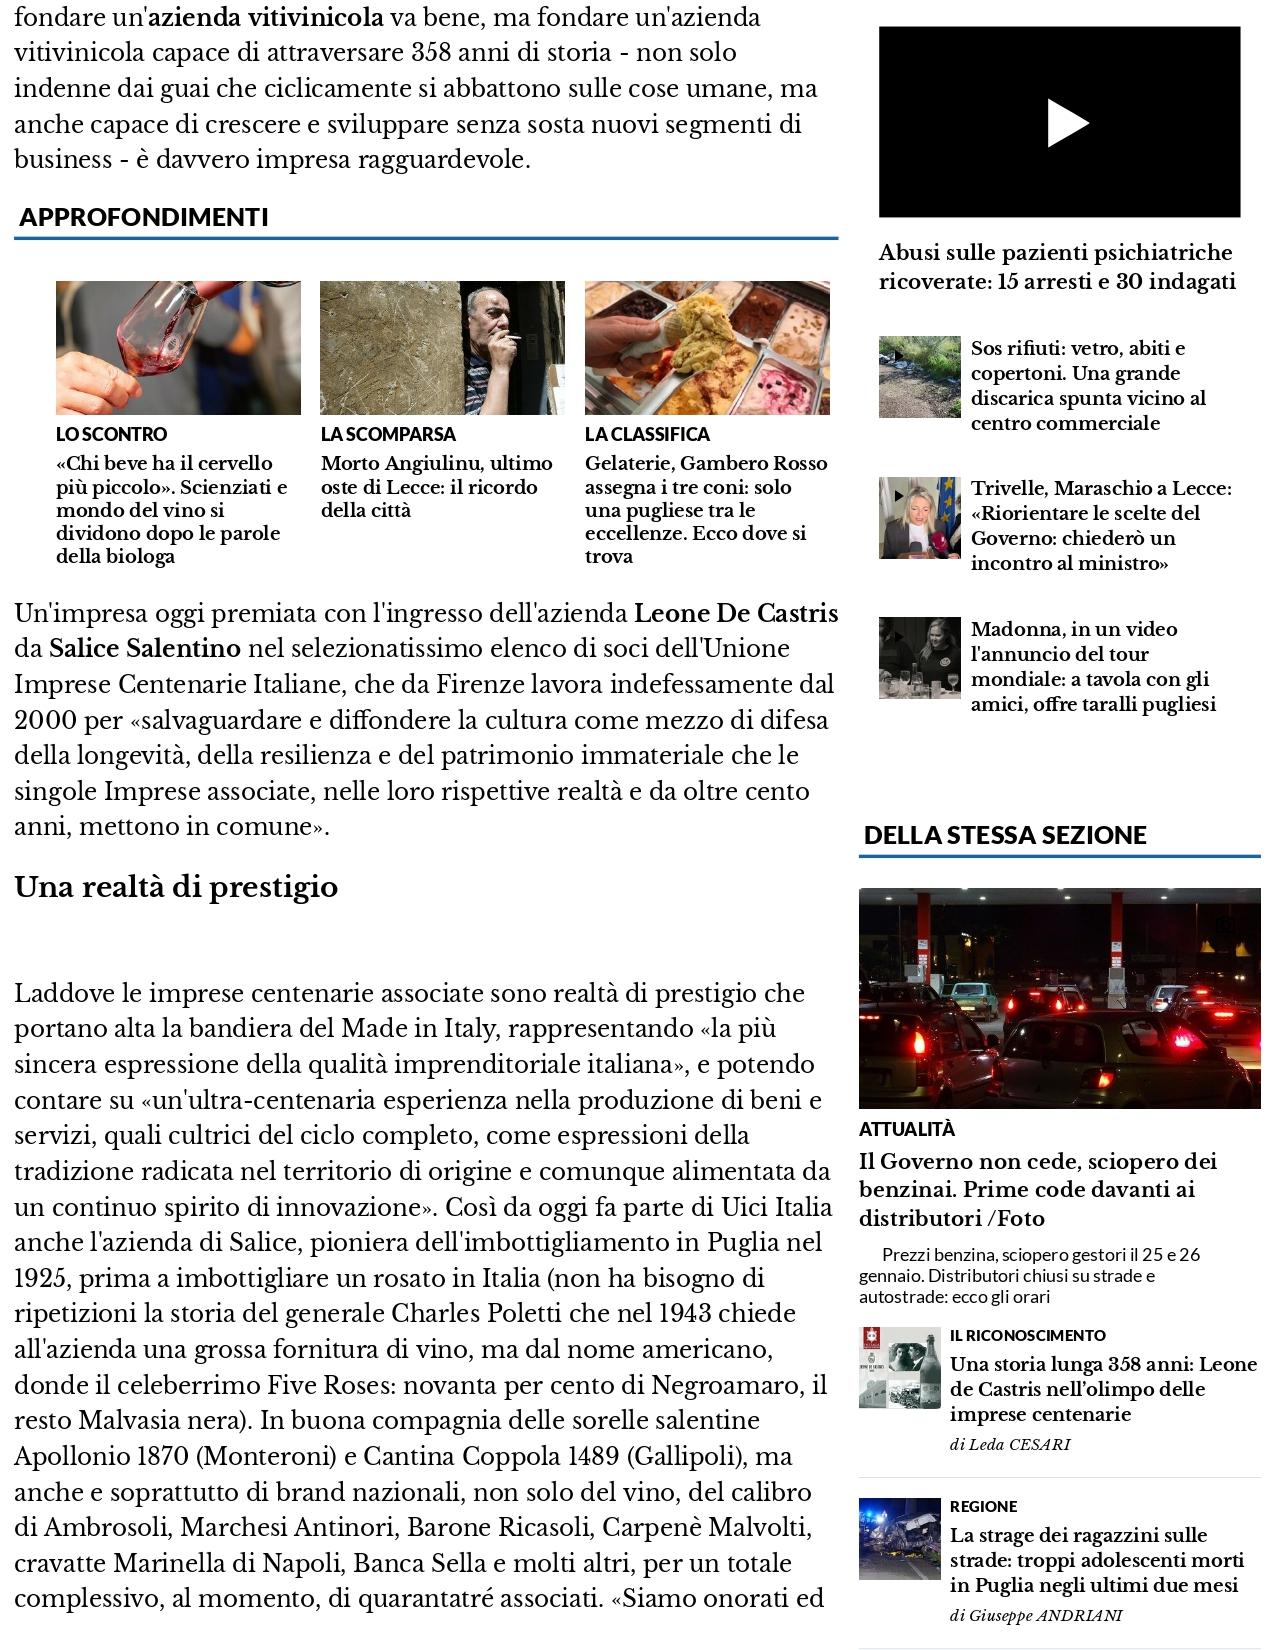 Il Nuovo Quotidiano di Puglia Una storia lunga 358 anni Leone de Castris nellolimpo delle imprese centenarie 24 febbraio 2022 1 page 0002